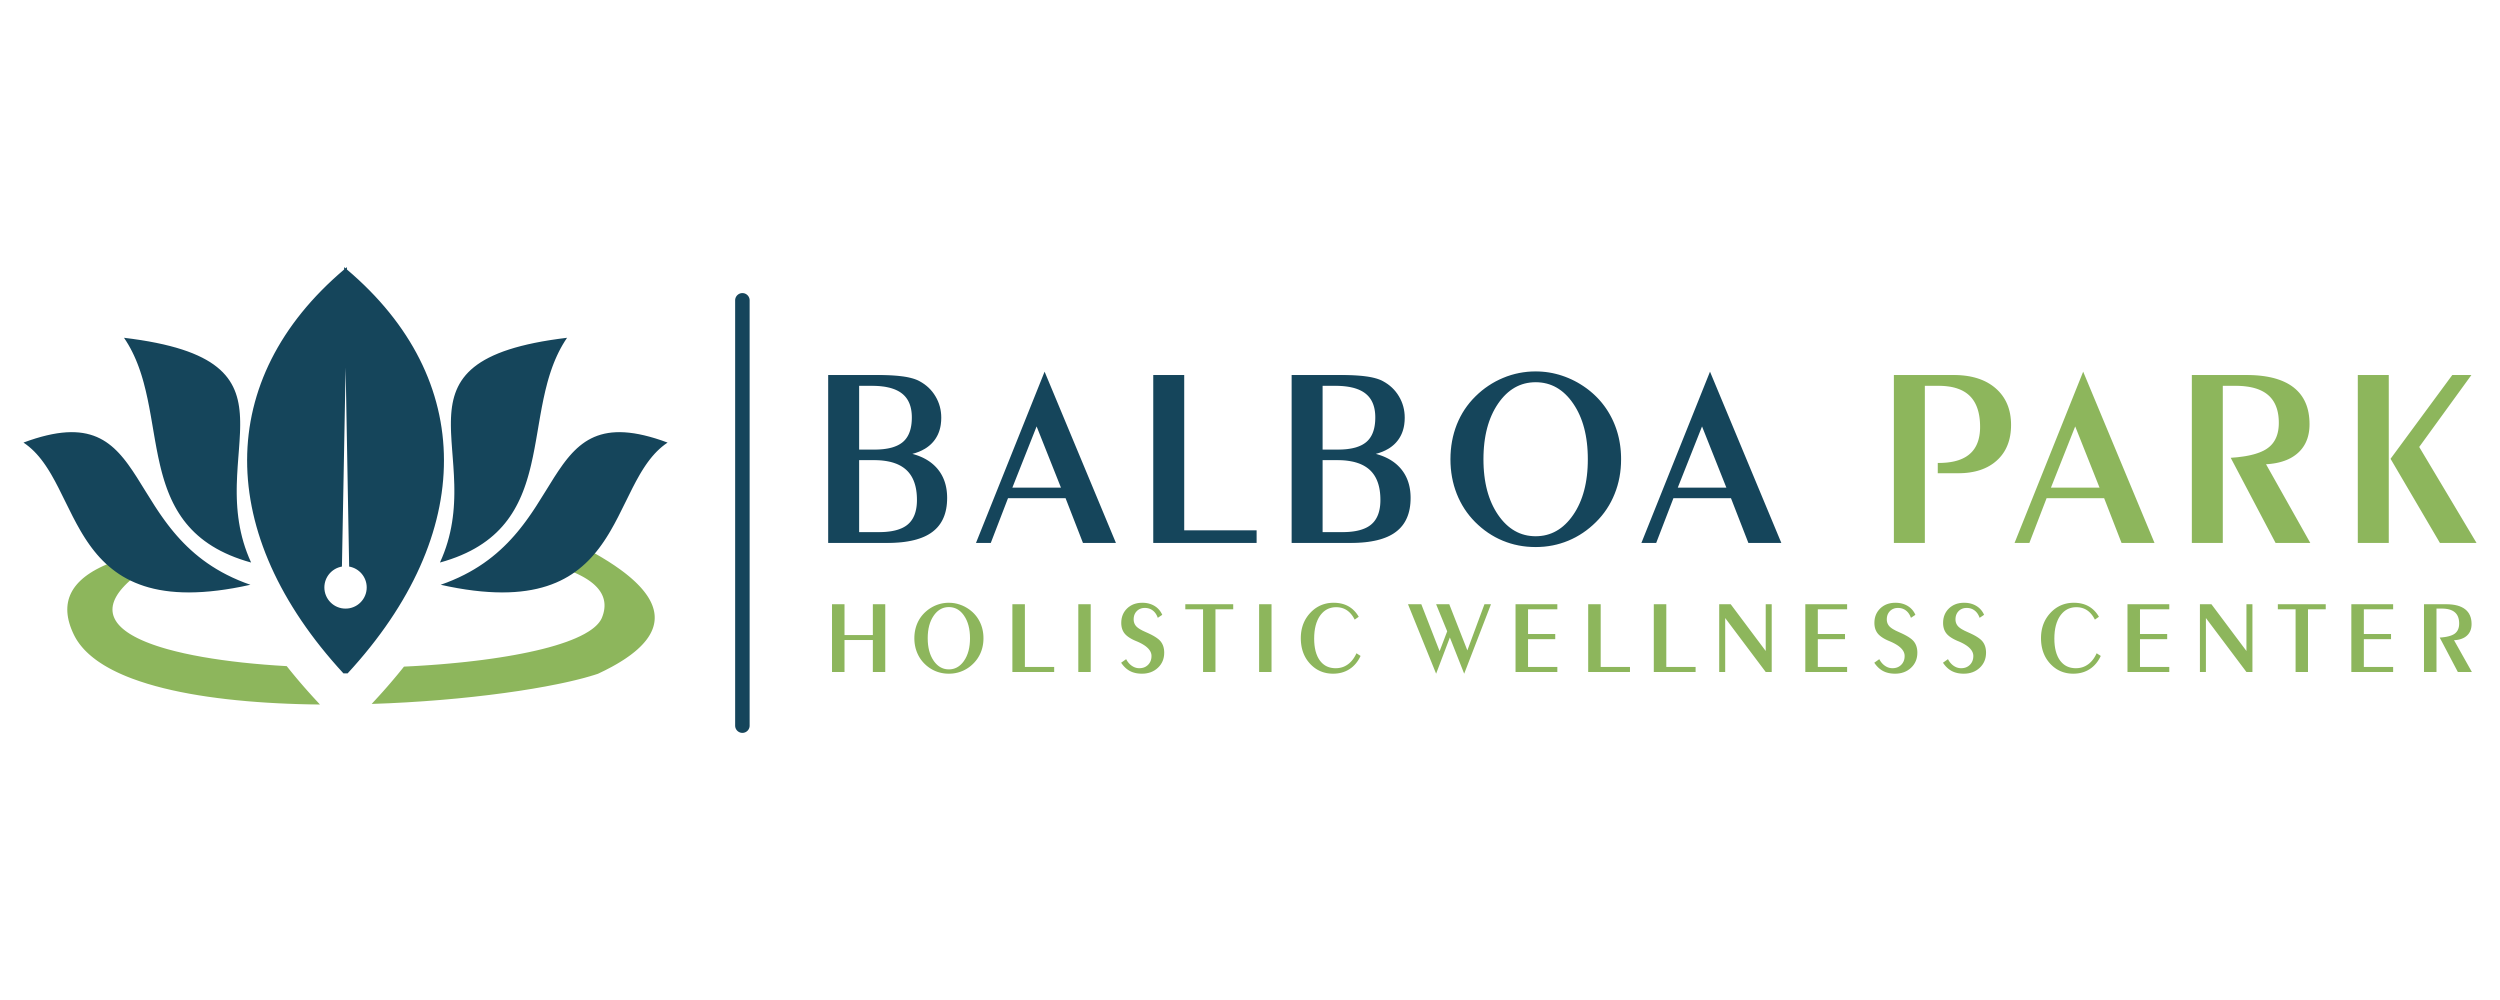 Balboa Park Holistic Wellness Center